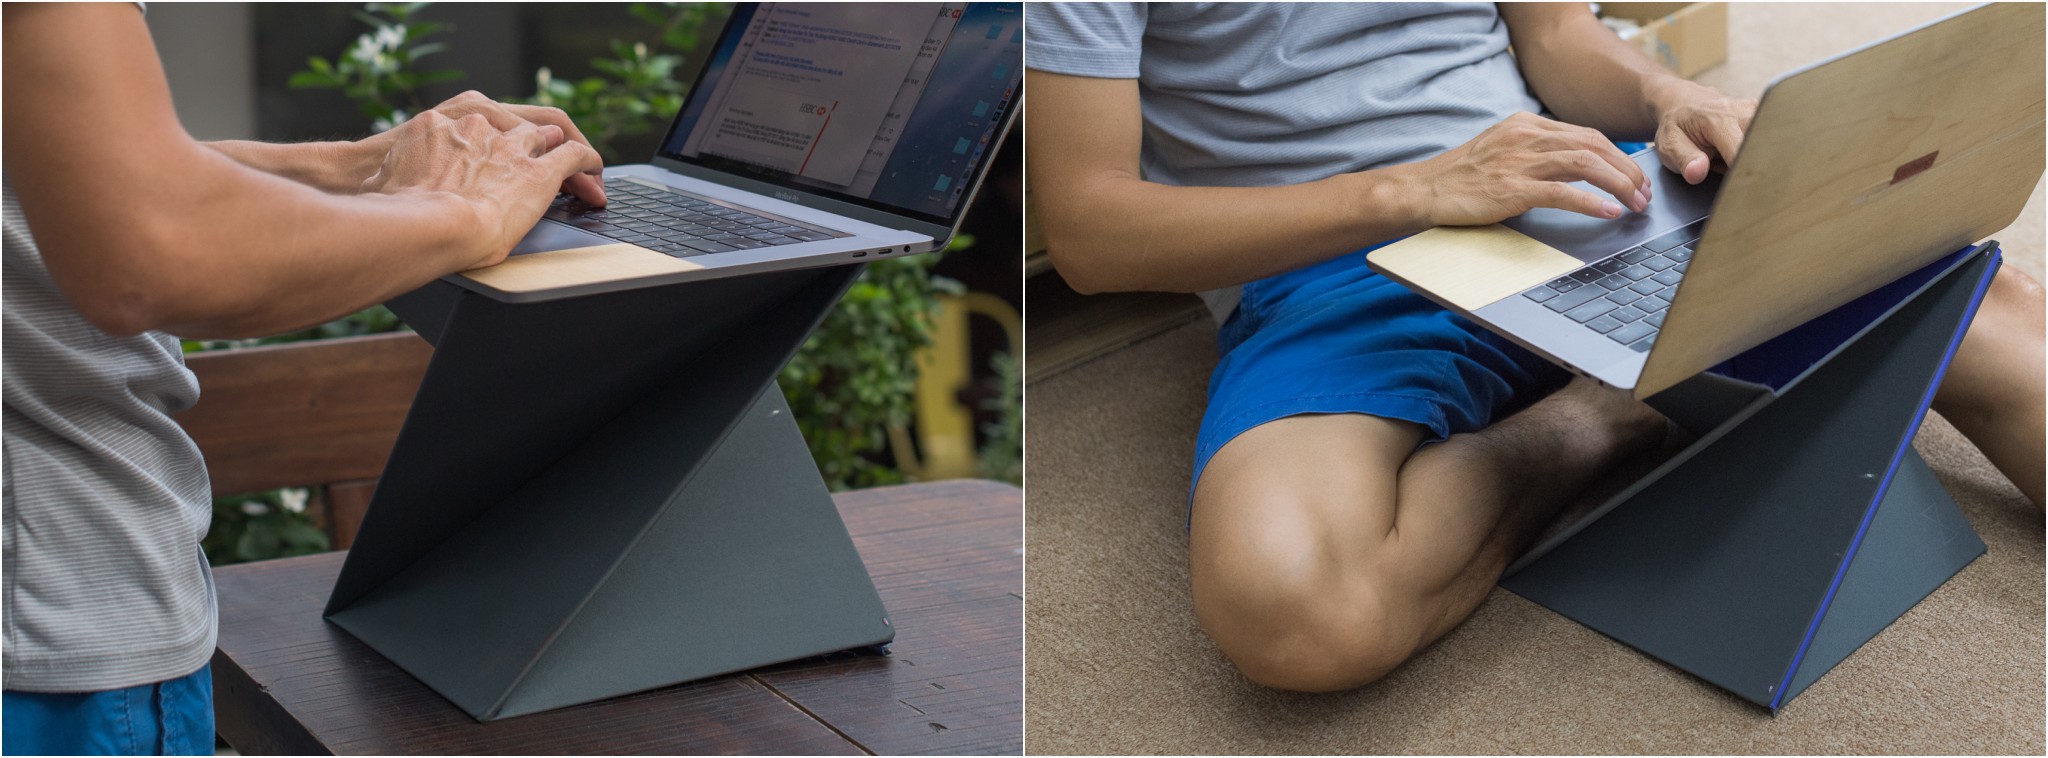 Trên tay kệ để laptop gấp được LEVIT8: biến bàn ngồi thành bàn đứng